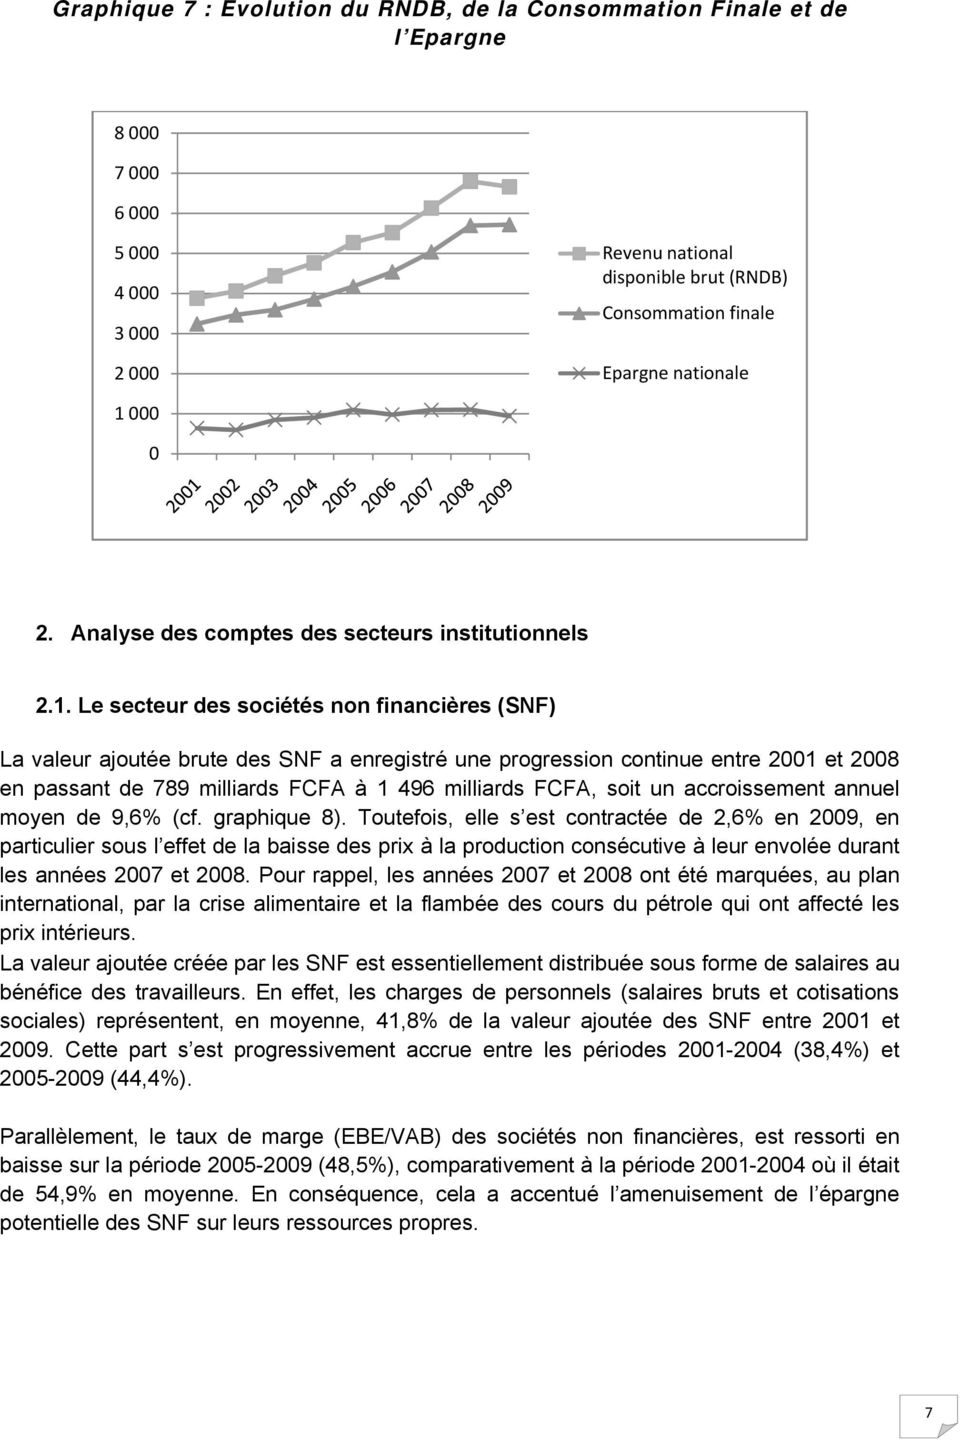 Le secteur des sociétés non financières (SNF) La valeur ajoutée brute des SNF a enregistré une progression continue entre 2001 et 2008 en passant de 789 milliards FCFA à 1 496 milliards FCFA, soit un